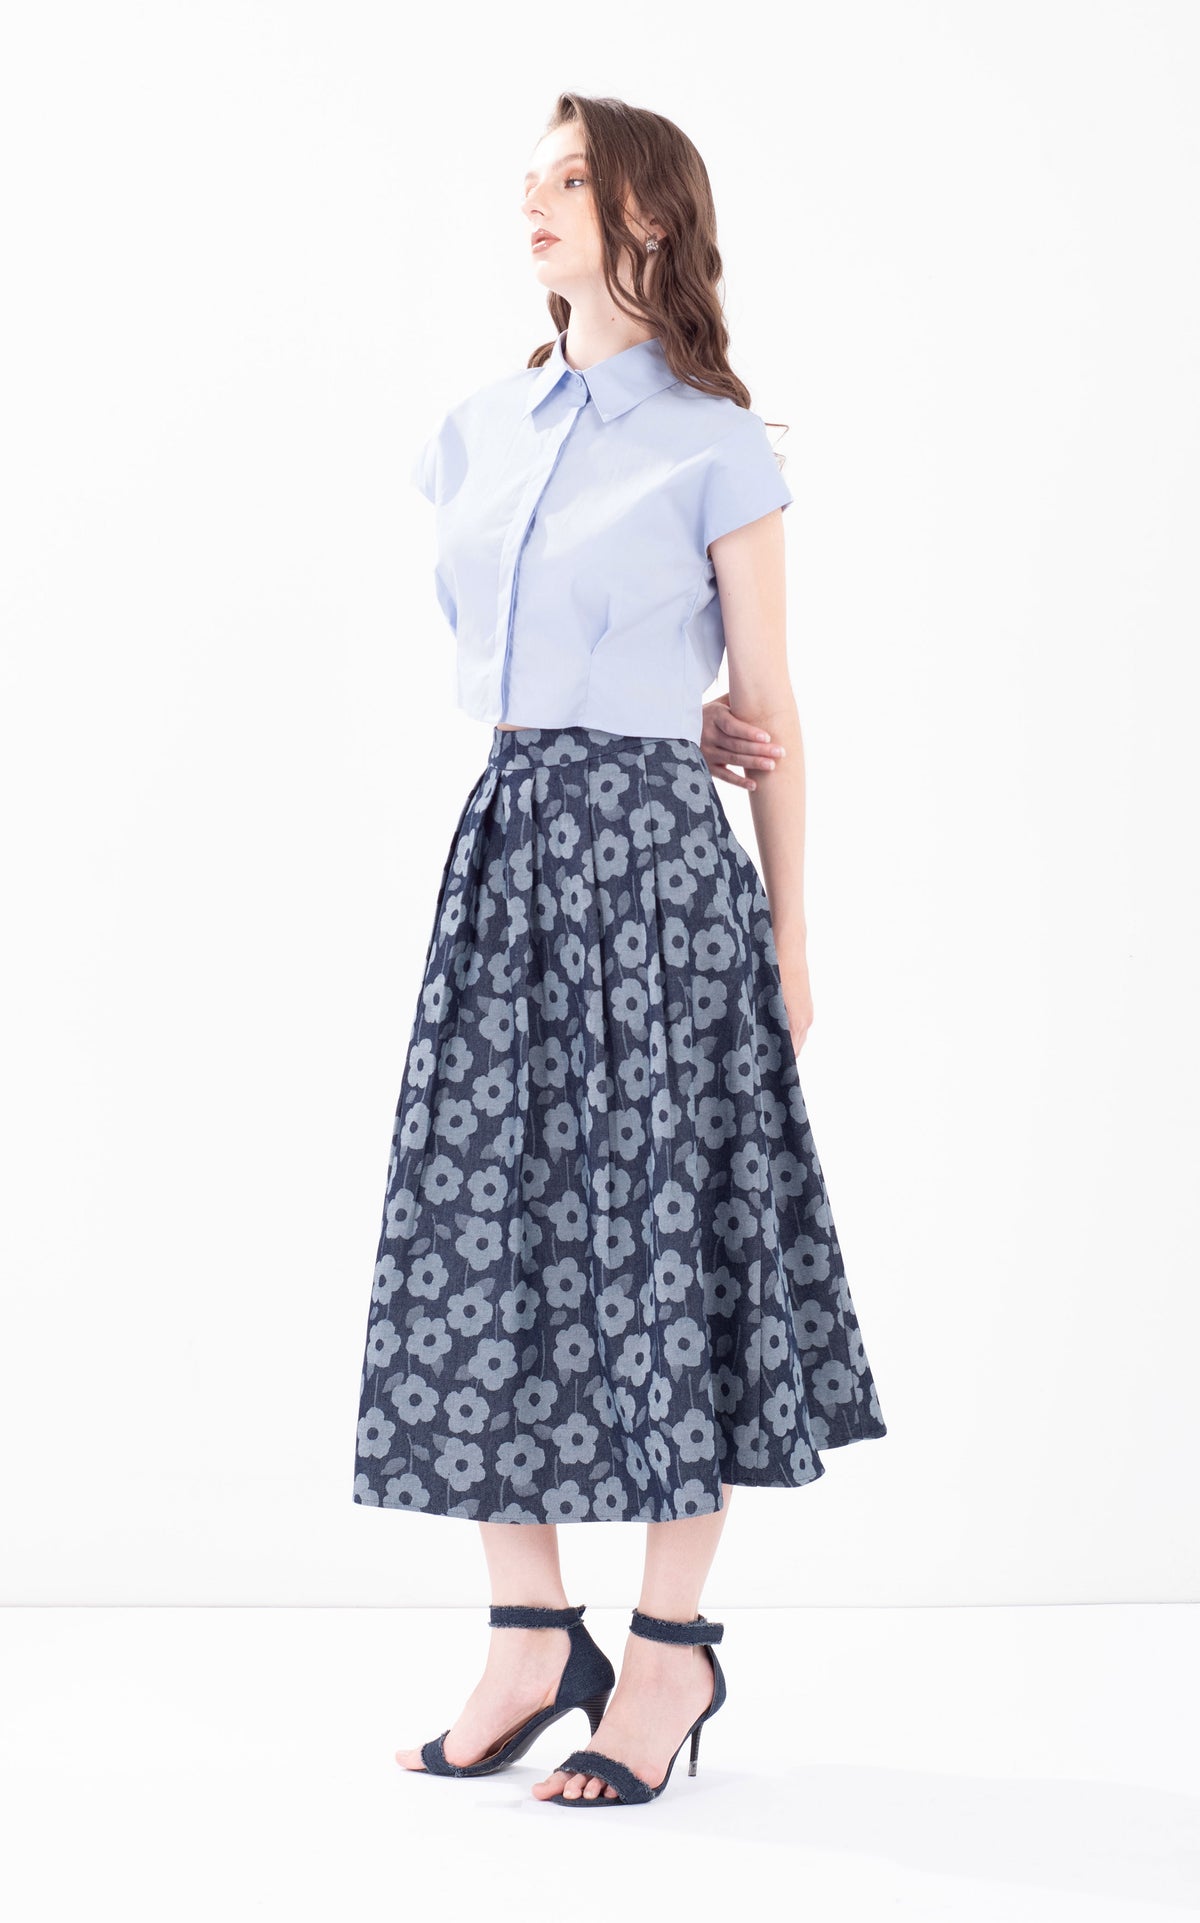 Flower Print Denim Skirt